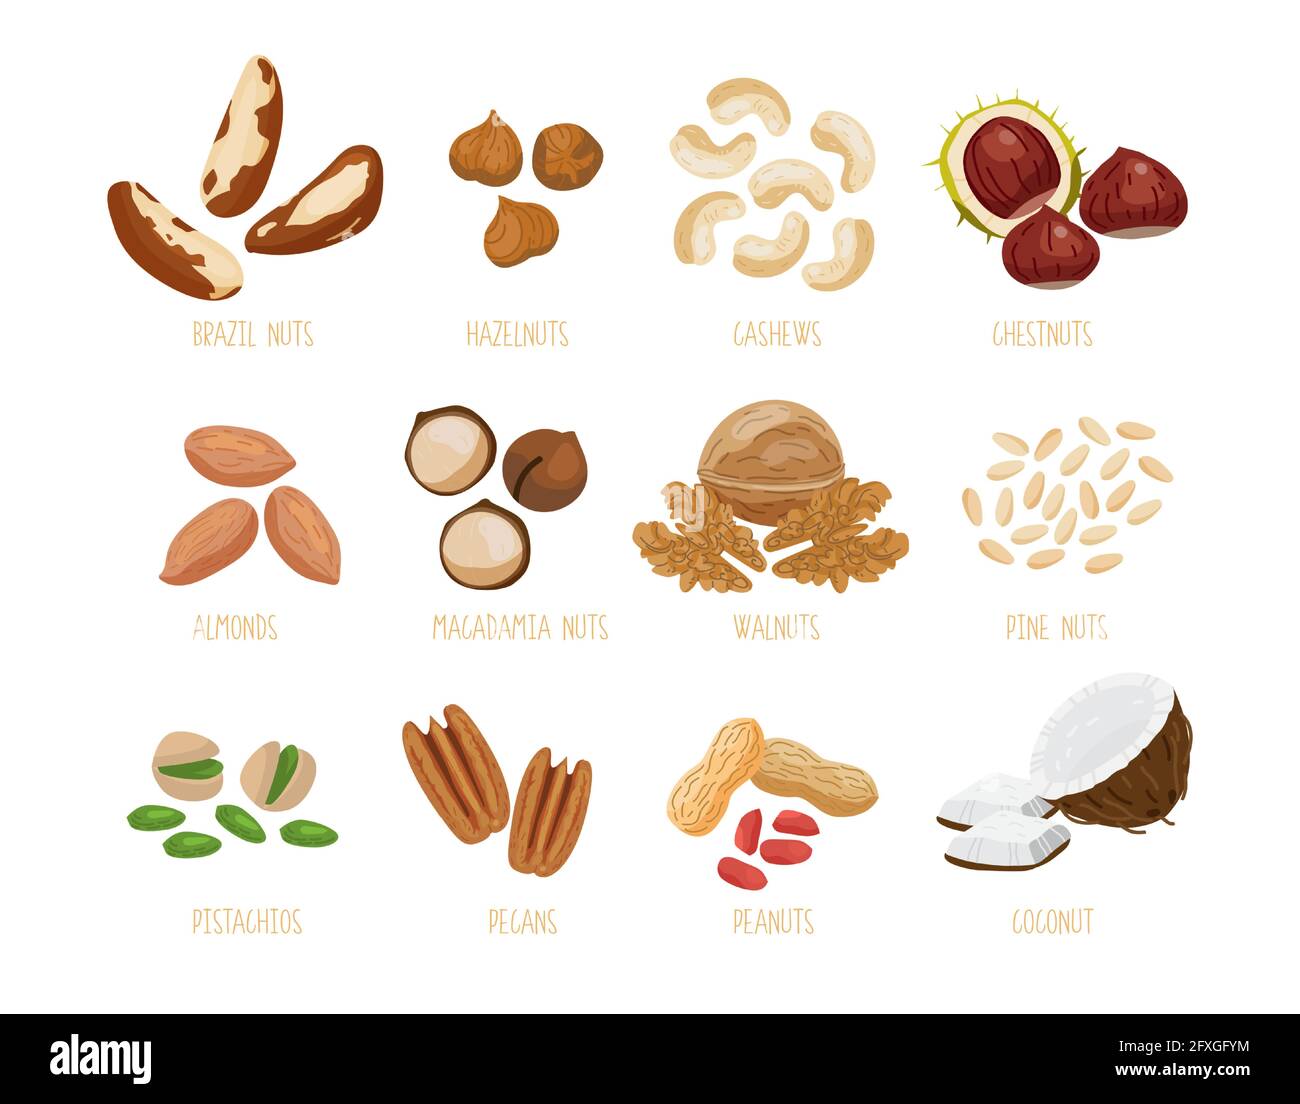 Jeu de noix de brésil, noisettes, noix de cajou, châtaignes, amandes, macadamia, noix, pignons de cèdre du pin, pistaches, pacanes, arachides, noix de coco. S isolés Illustration de Vecteur